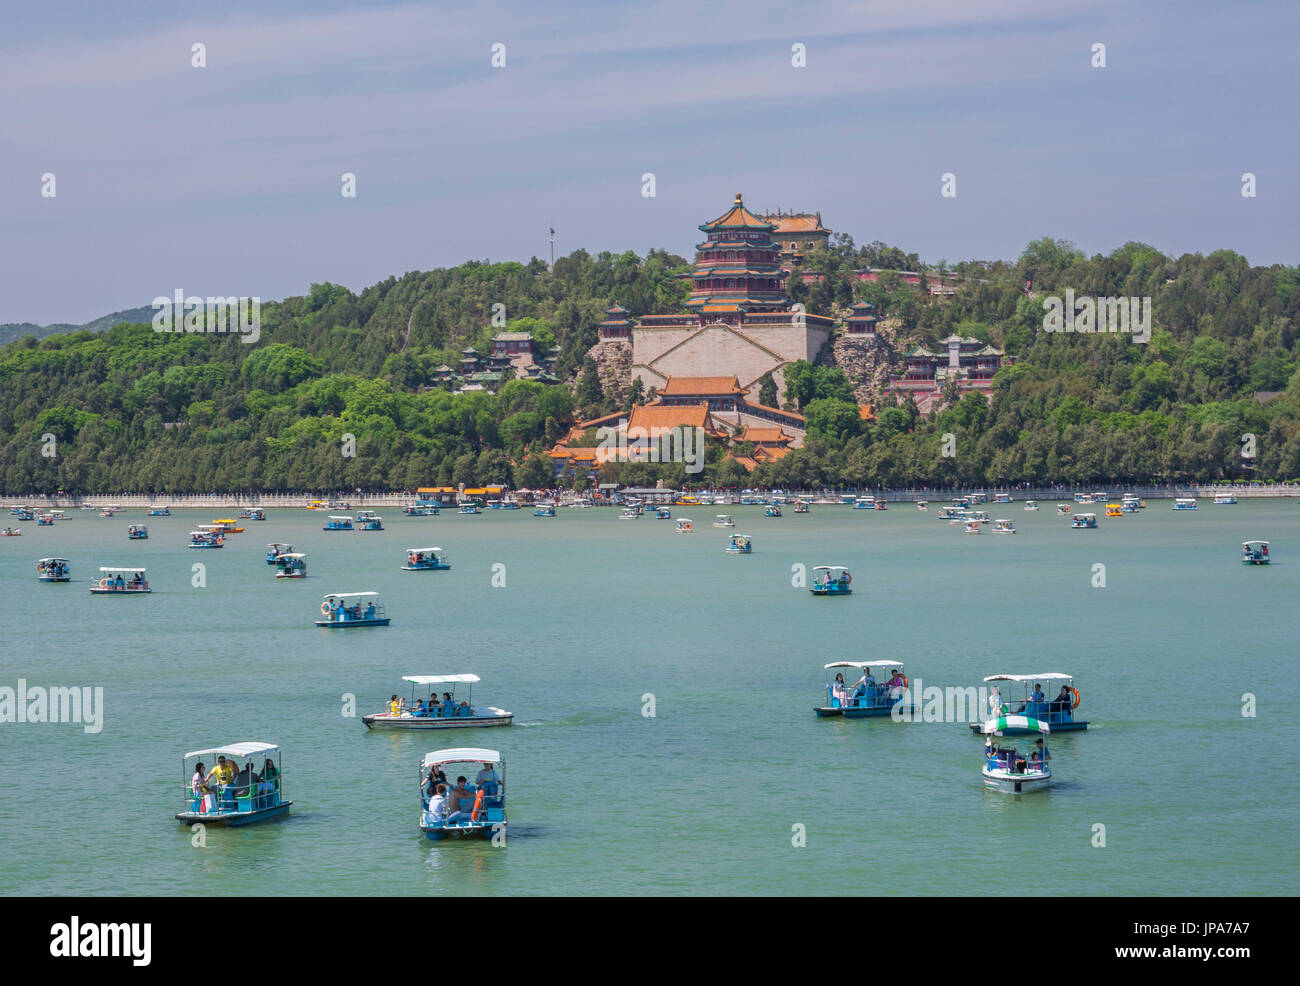 La Chine, la ville de Beijing, le Palais d'été, la colline de la longévité, Bouddhiste Fragance Pavilion, le Lac de Kunming Banque D'Images